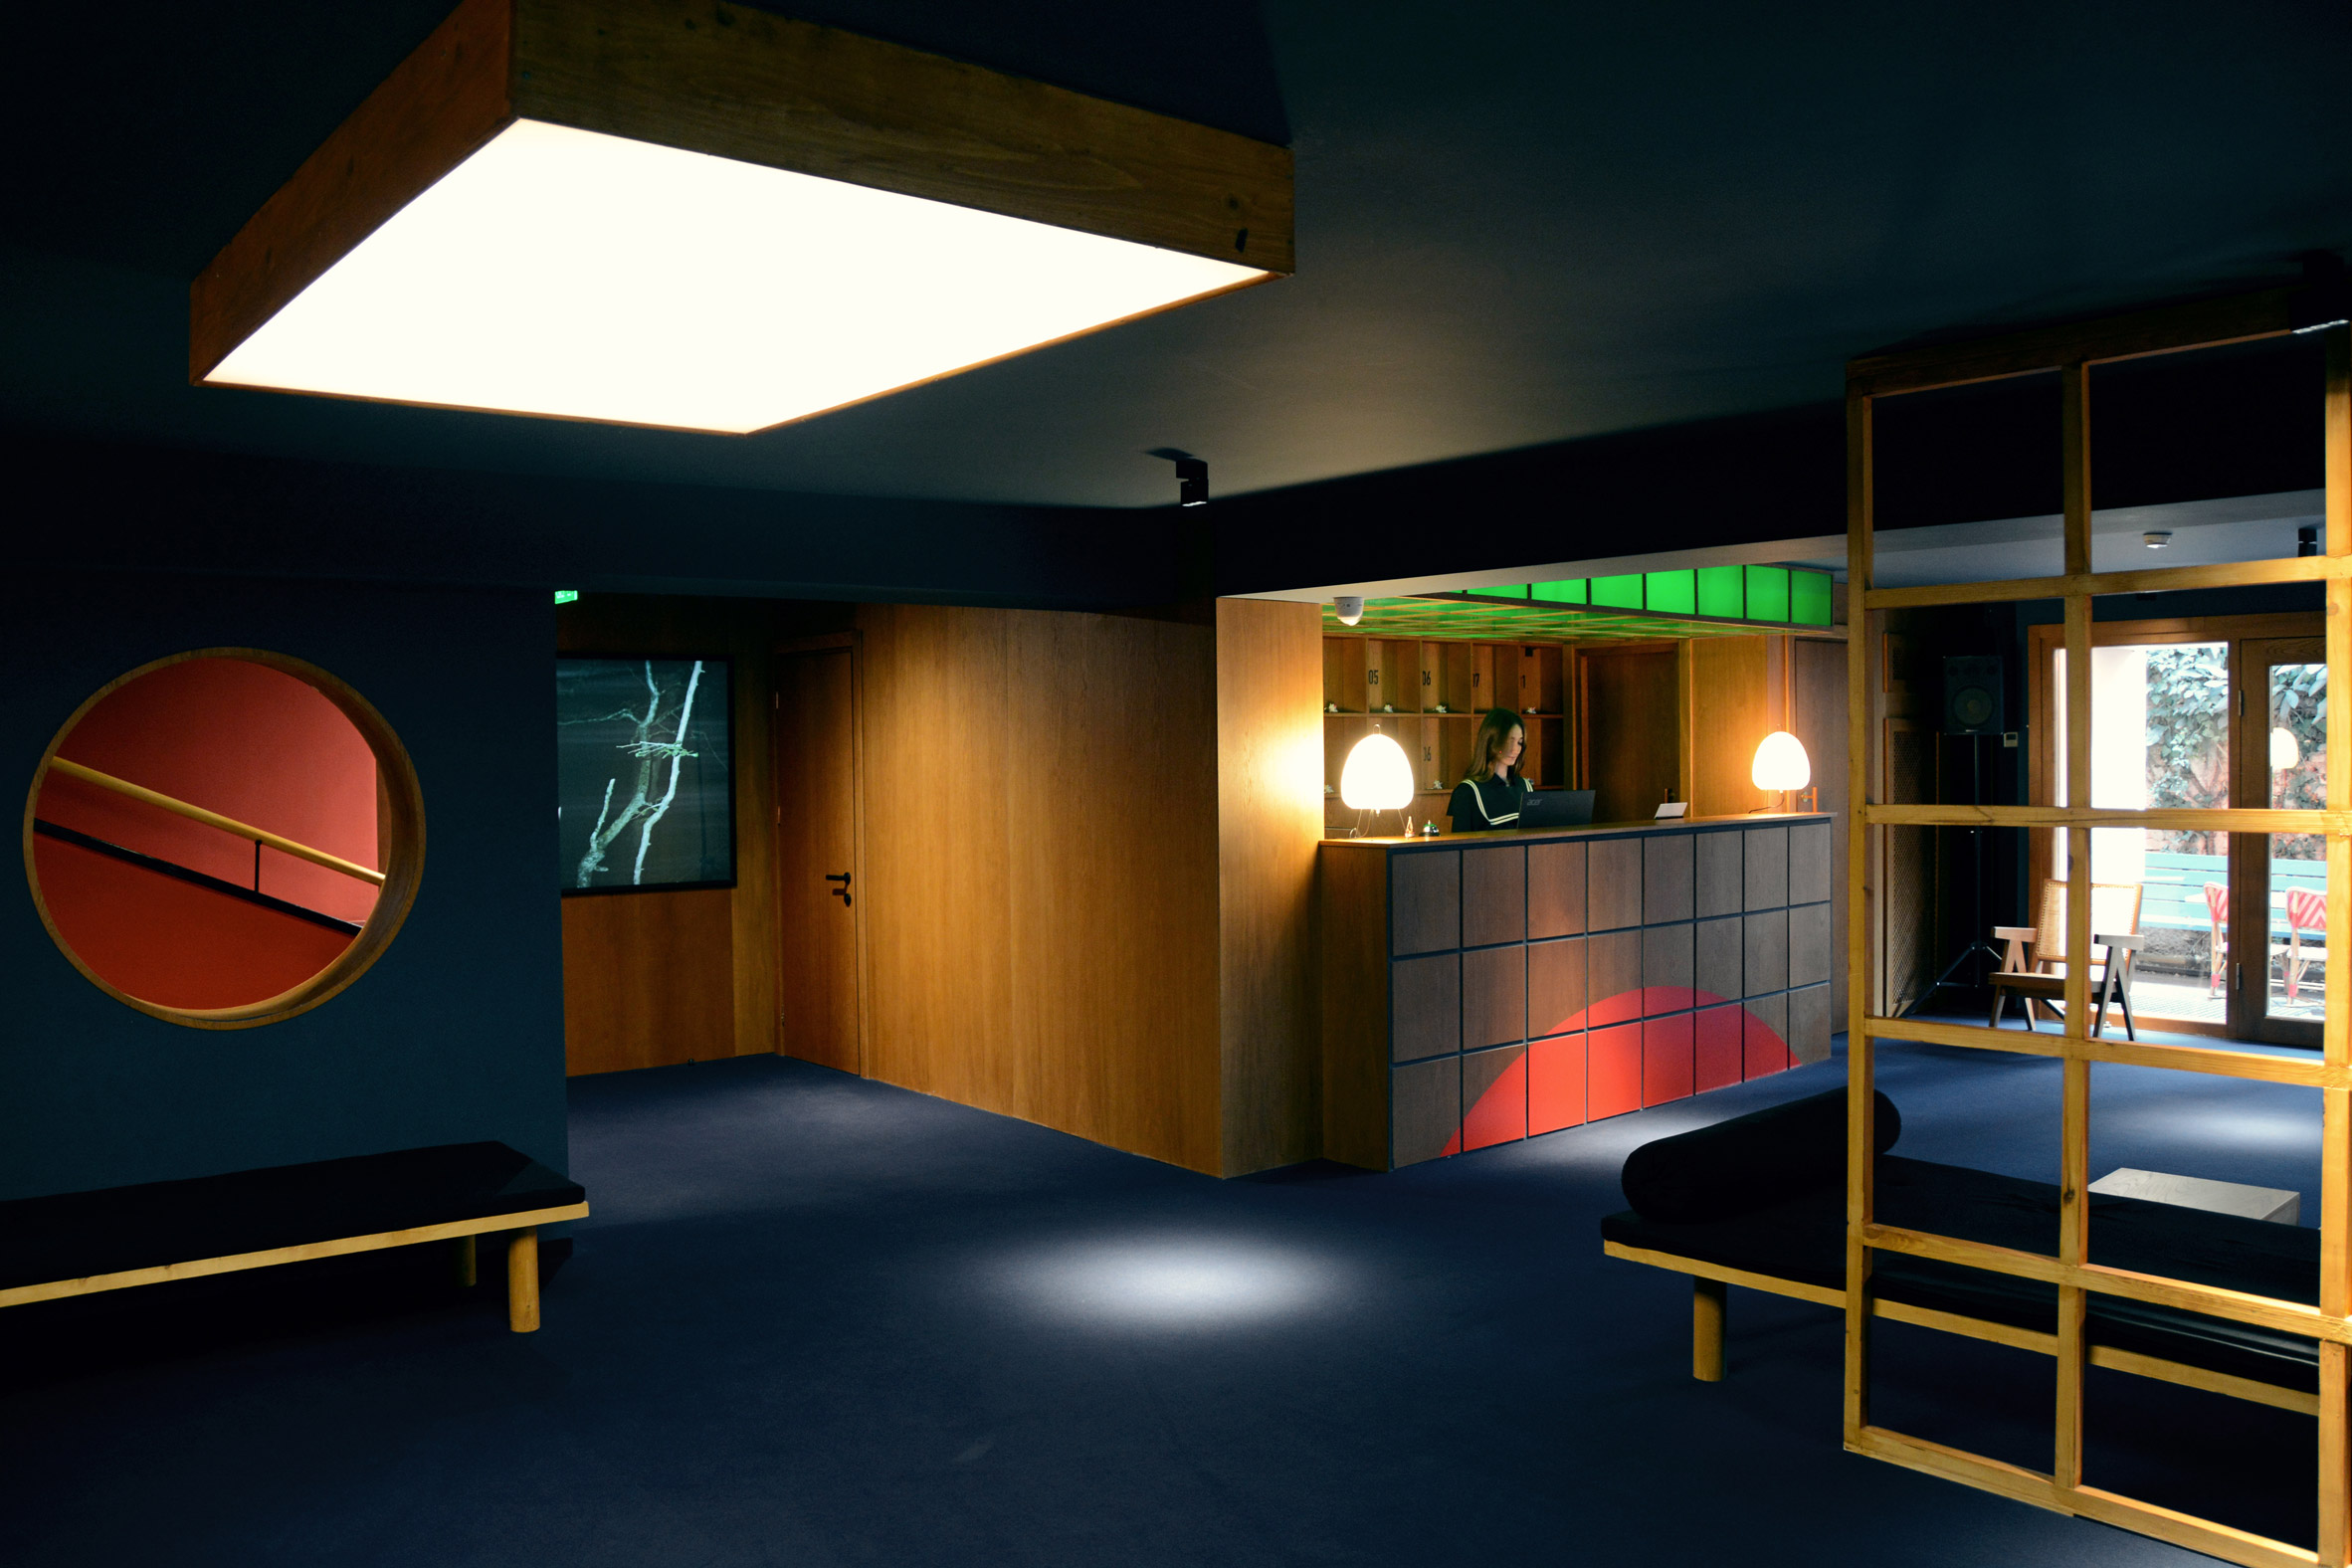 第比利斯的蓝莓之夜酒店让“人们感觉自己置身于电影之中”|ART-Arrakis | 建筑室内设计的创新与灵感